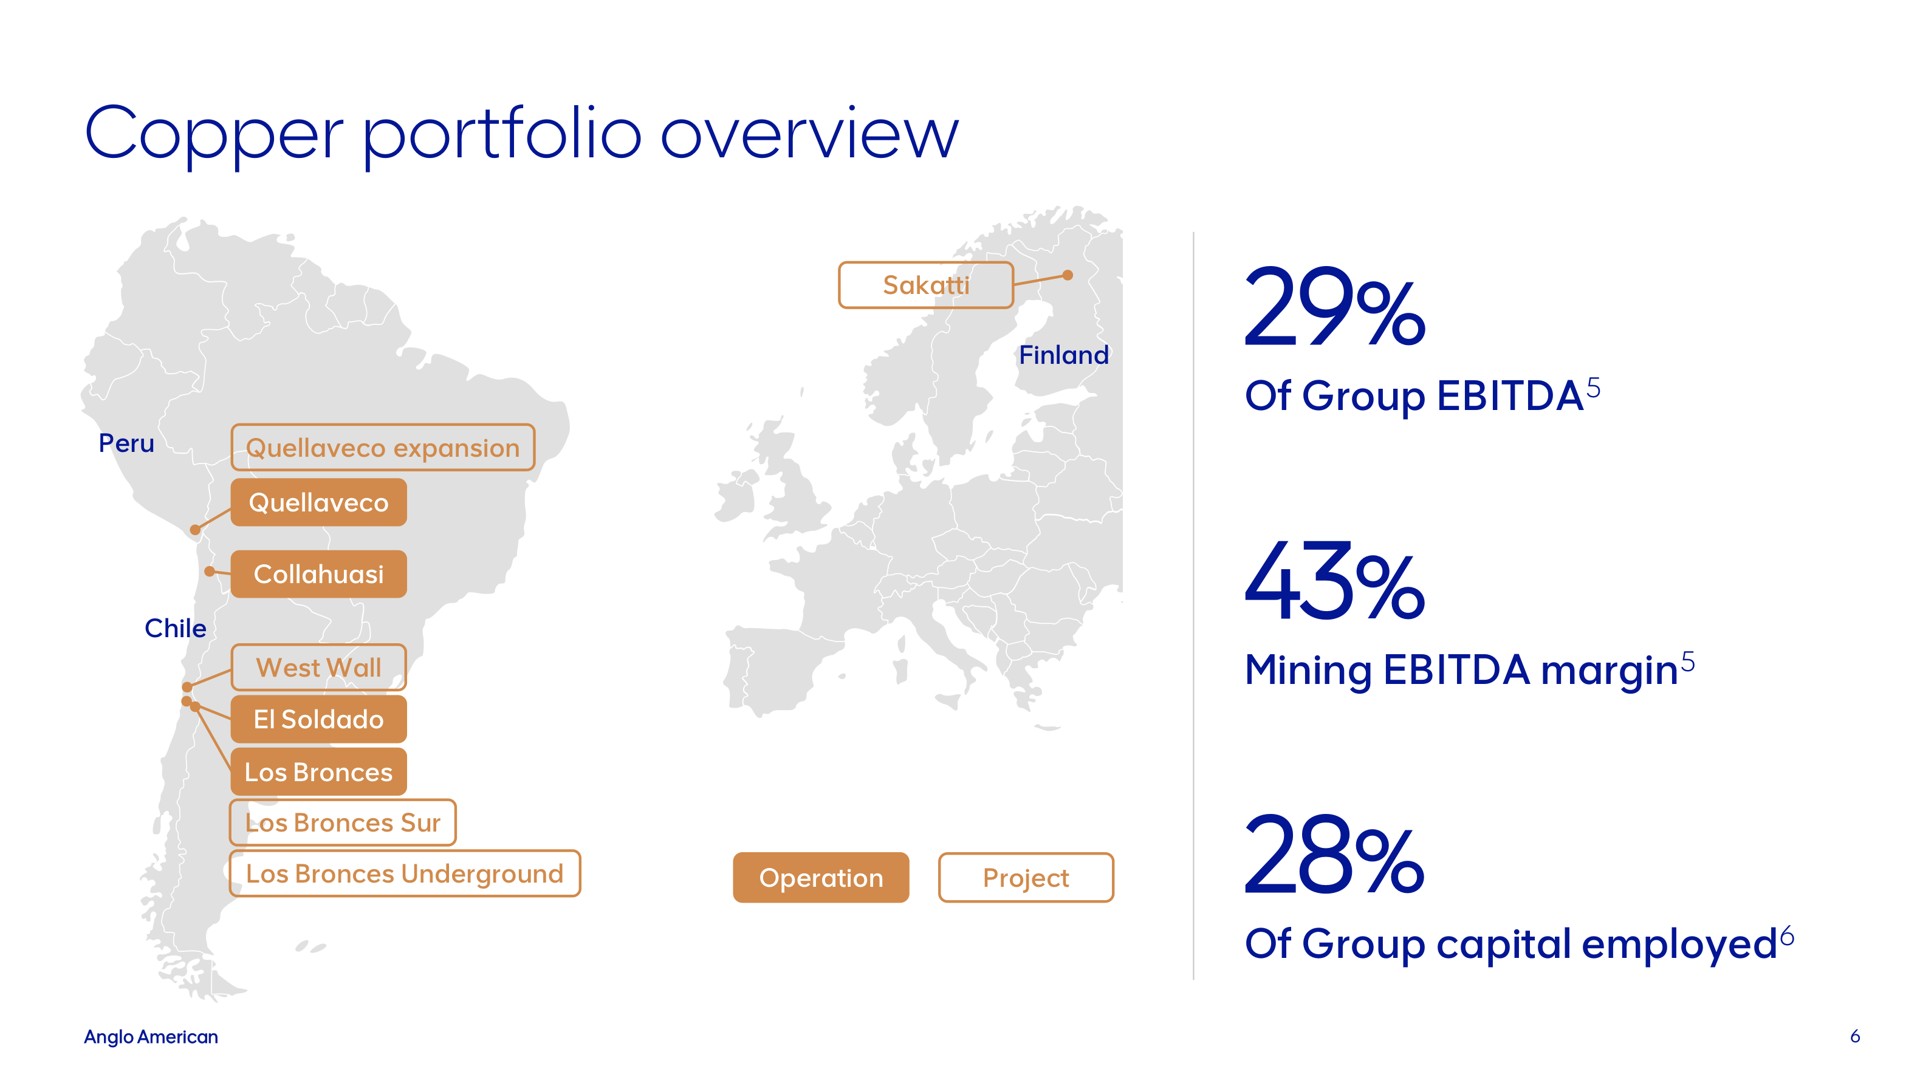 copper portfolio overview | AngloAmerican